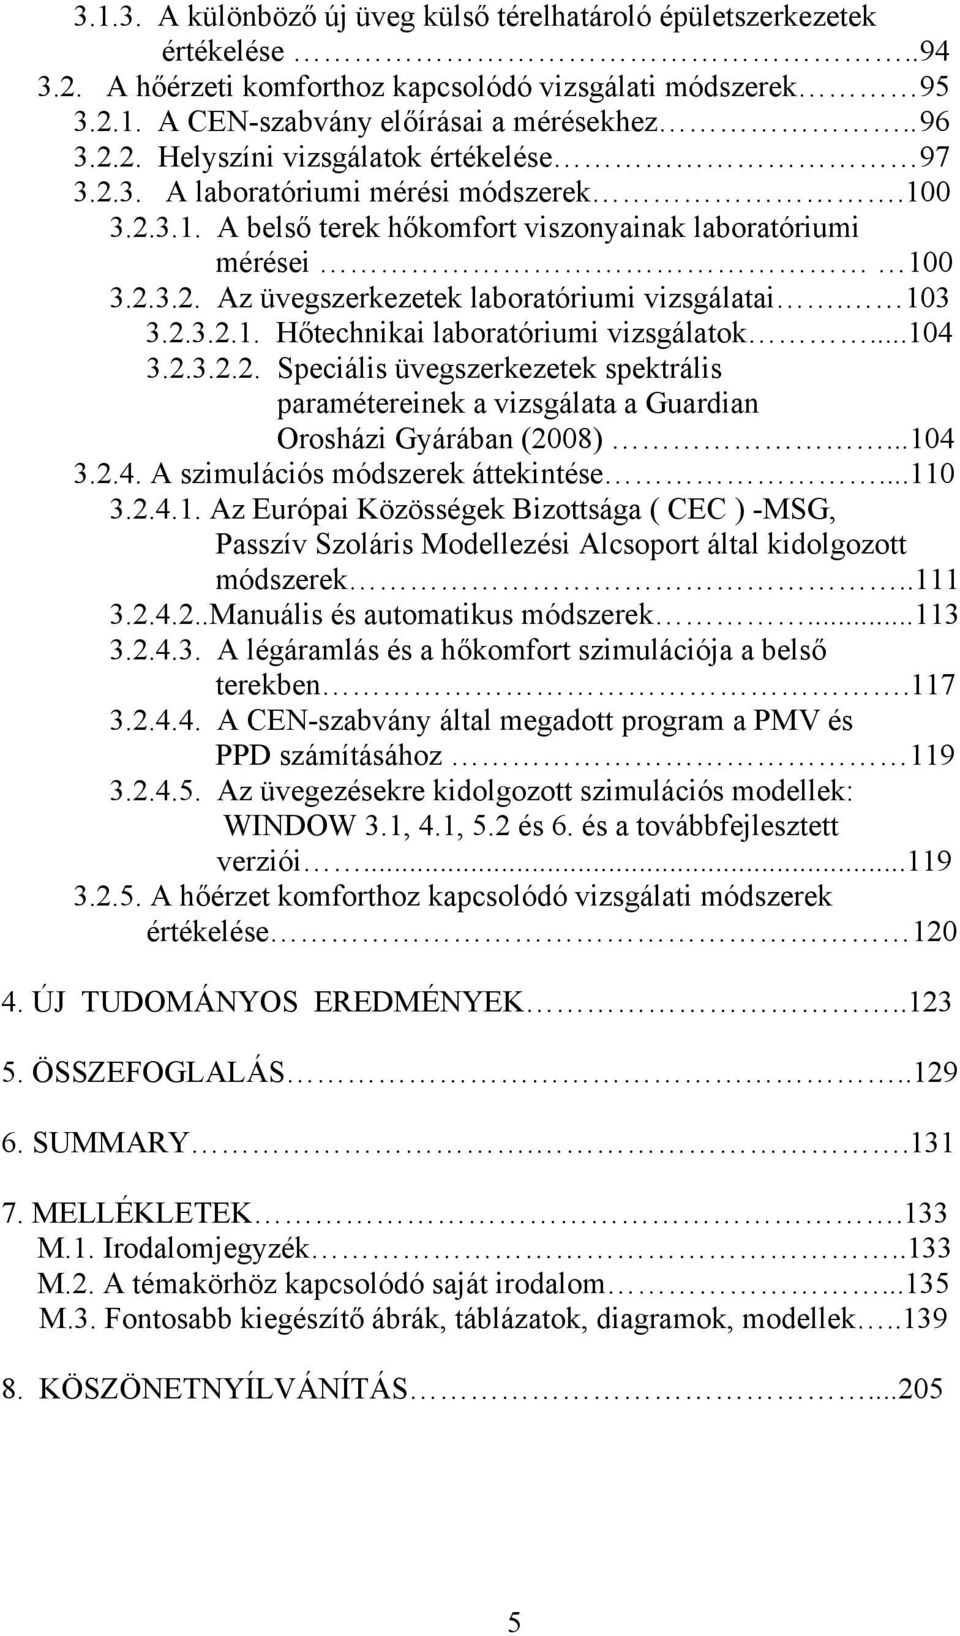 ..104 3.2.3.2.2. Speciális üvegszerkezetek spektrális paramétereinek a vizsgálata a Guardian Orosházi Gyárában (2008)...104 3.2.4. A szimulációs módszerek áttekintése...110 3.2.4.1. Az Európai Közösségek Bizottsága ( CEC ) -MSG, Passzív Szoláris Modellezési Alcsoport által kidolgozott módszerek.